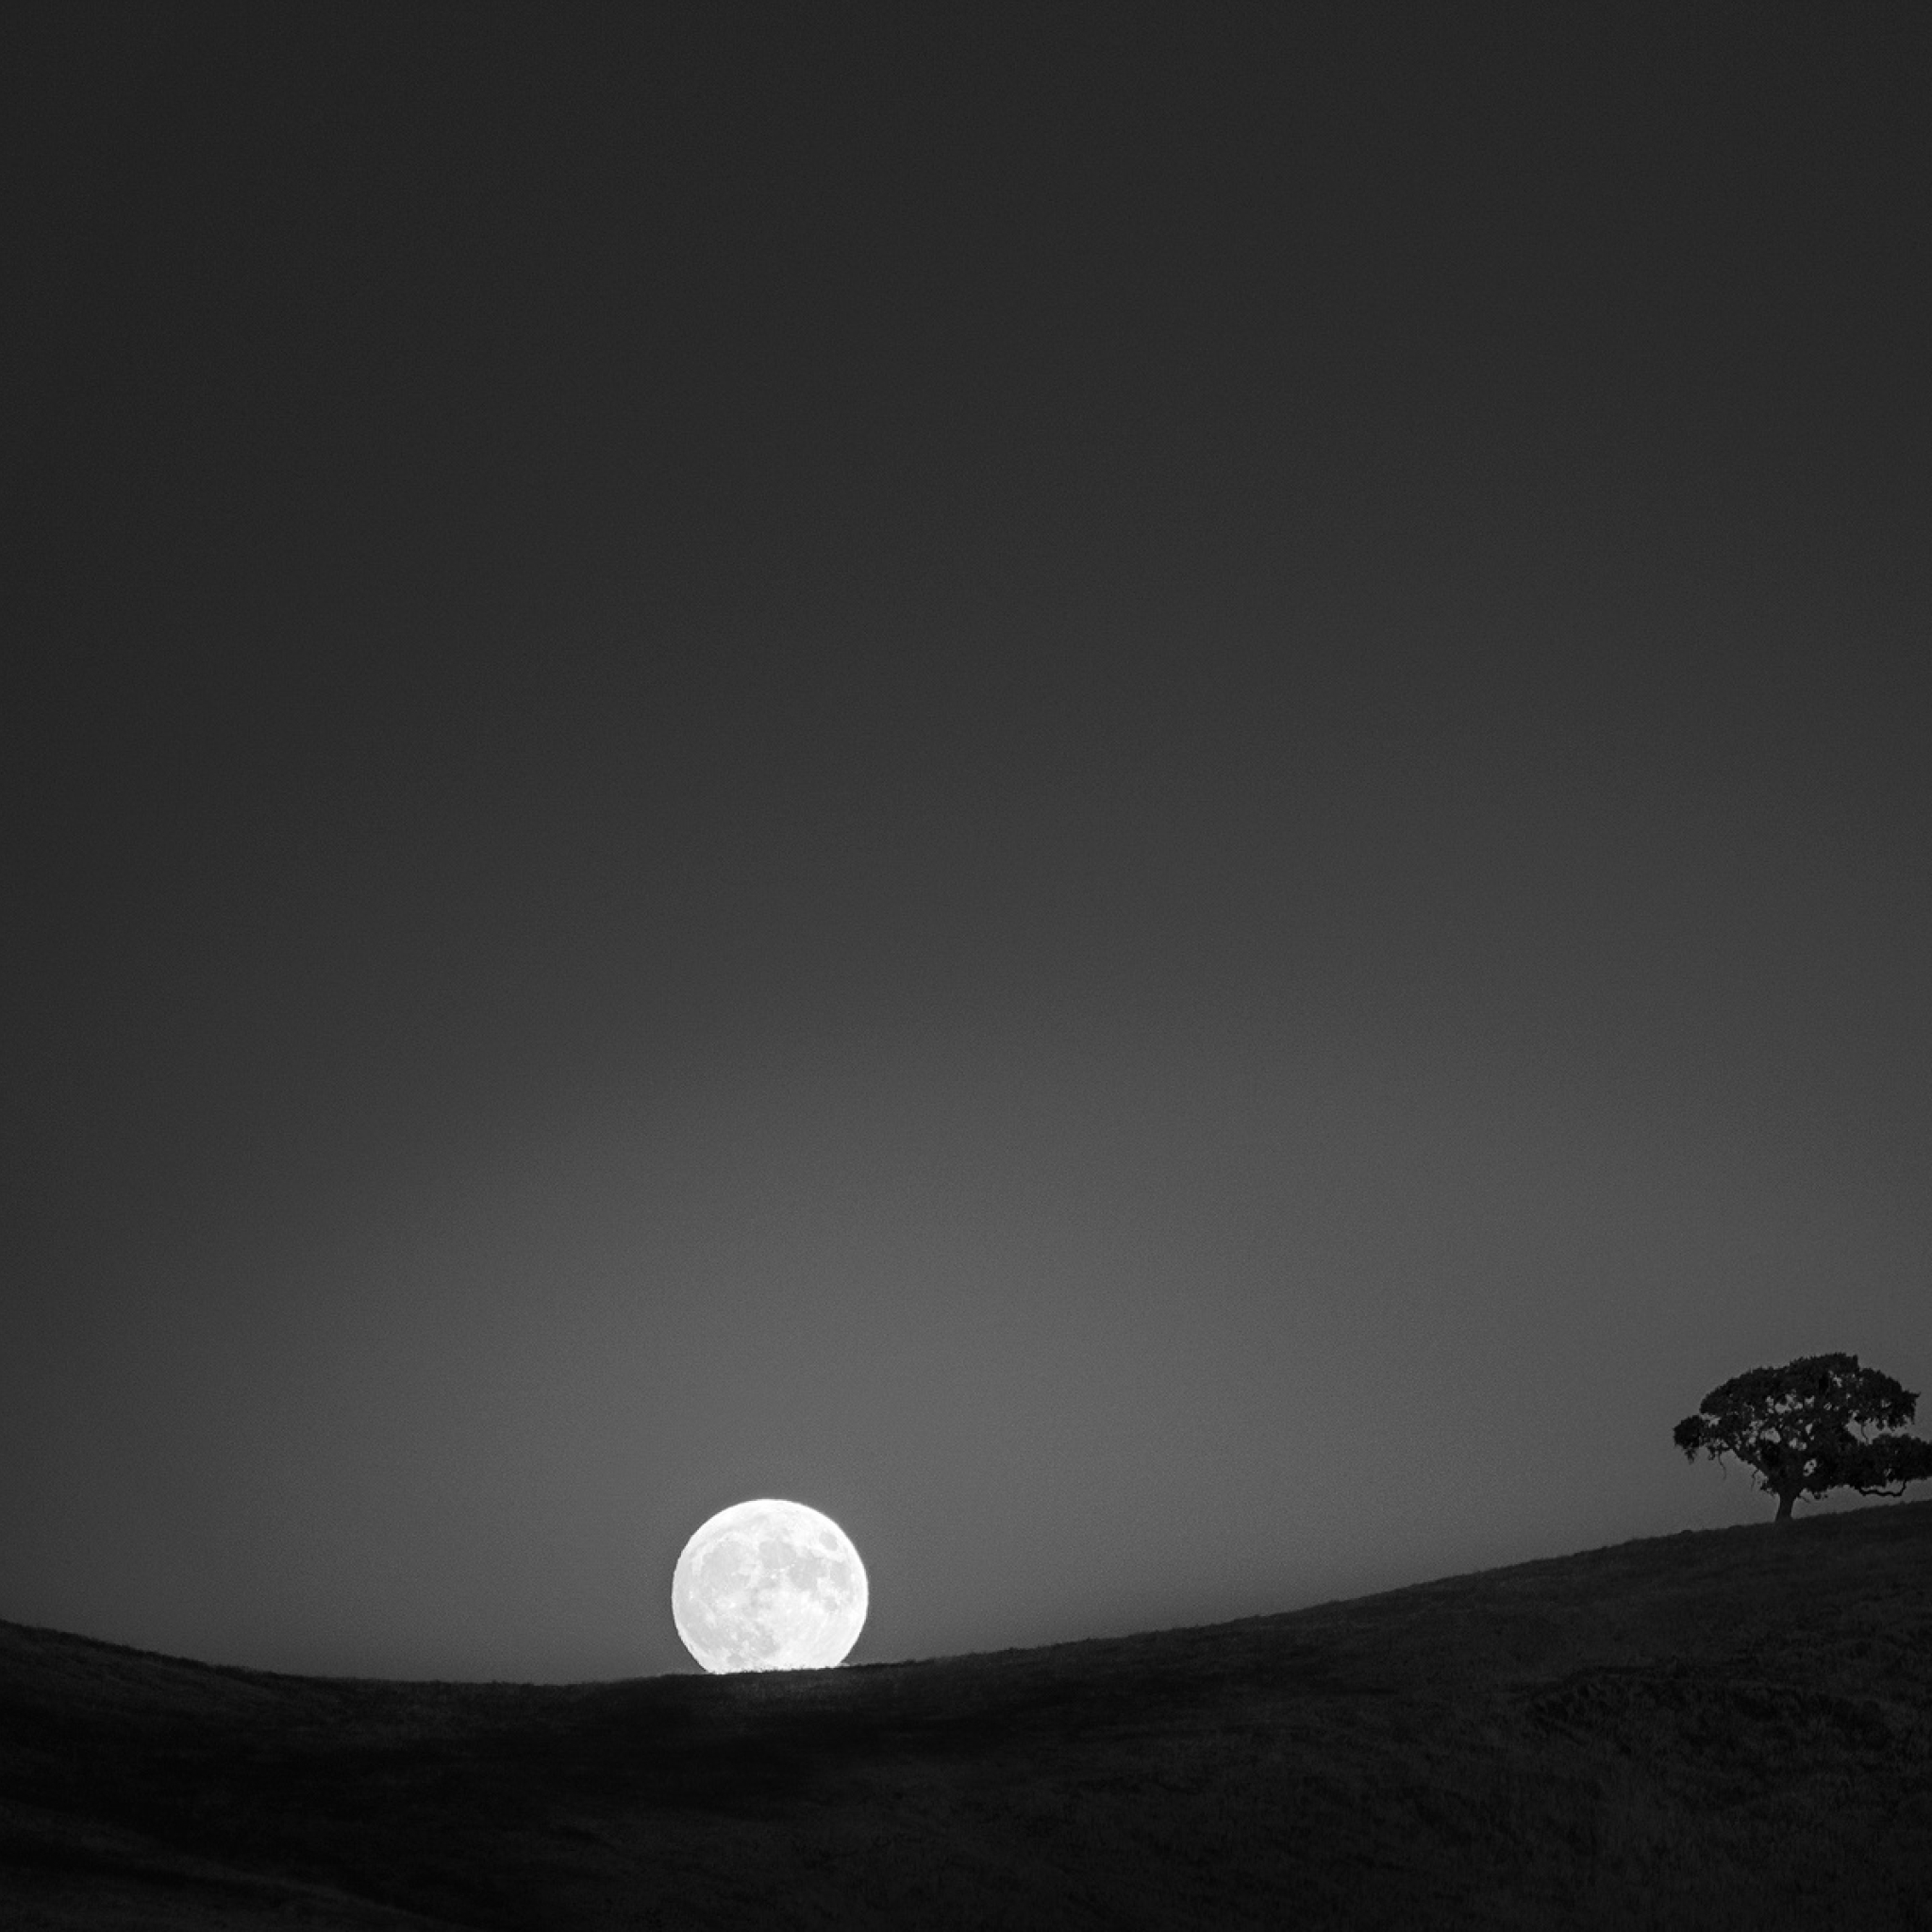 2048x2048 Resolution Moon Night HD Landscape Ipad Air Wallpaper ...